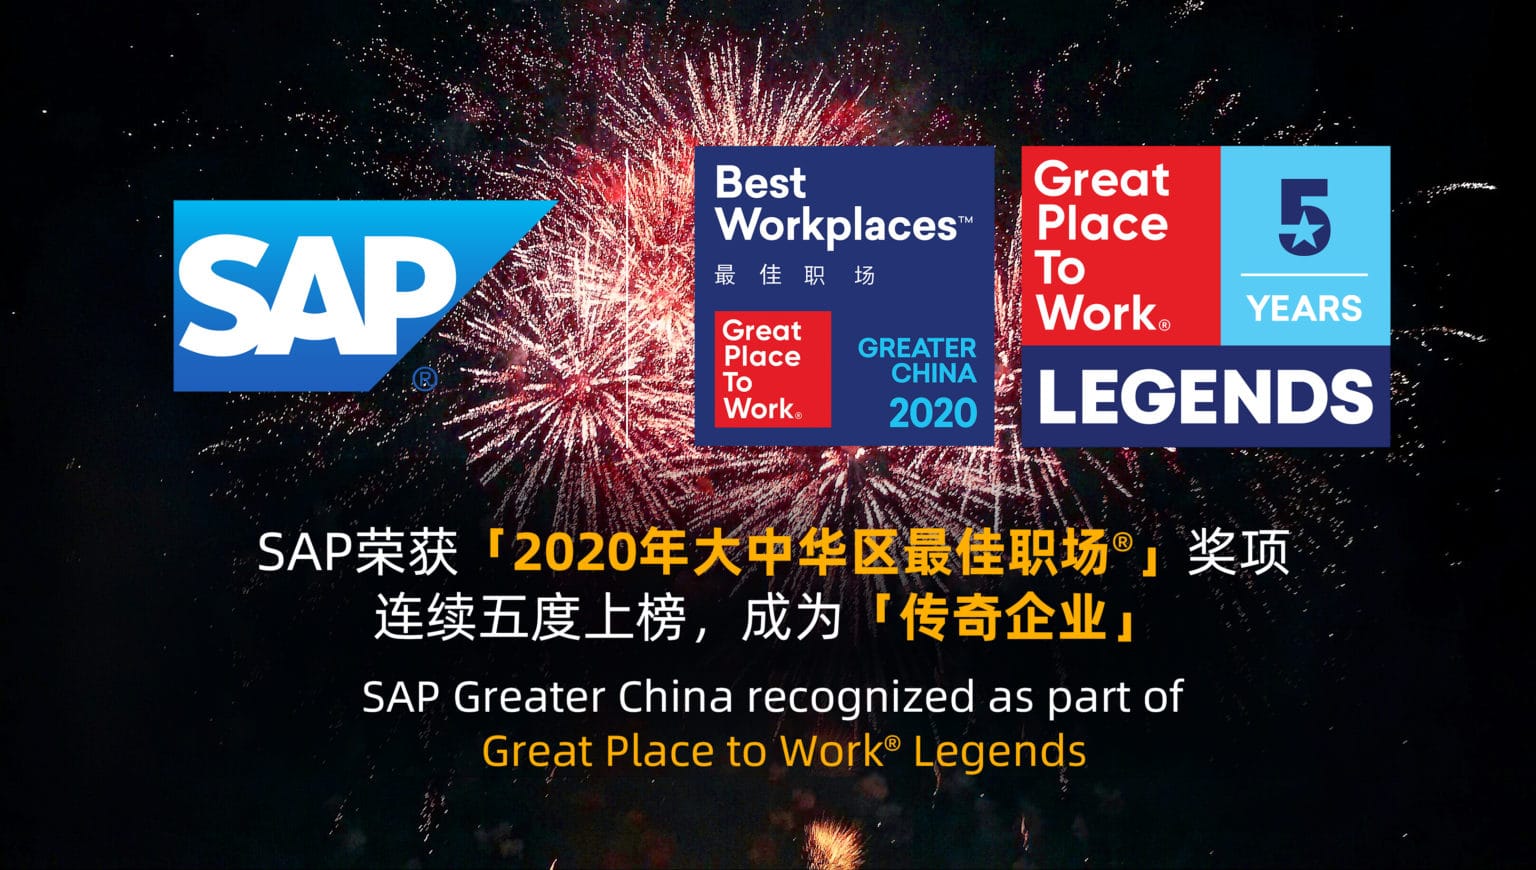 SAP榮獲「2020年大中華區最佳職場®」獎項 連續五度上榜，成為「傳奇企業」